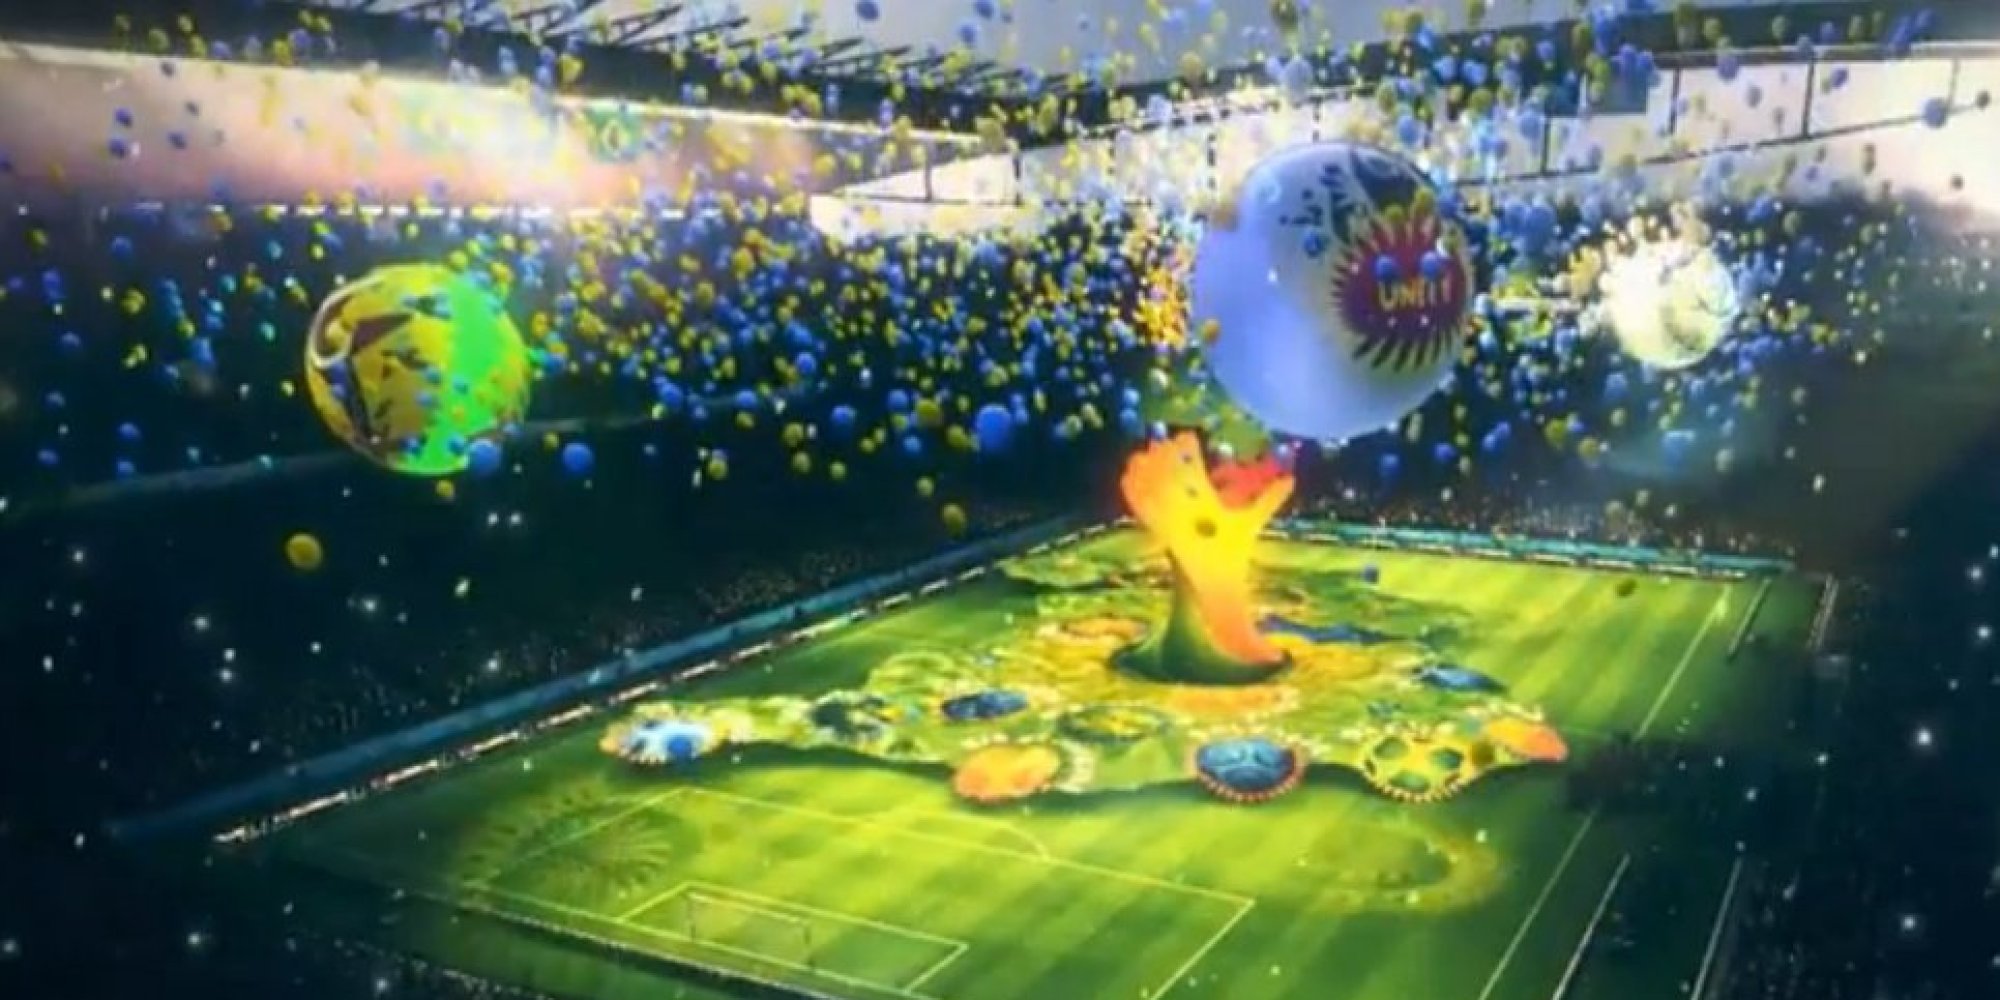 Zastaki.com - Церемония открытия на Чемпионате мира по футболу в Бразилии 2014